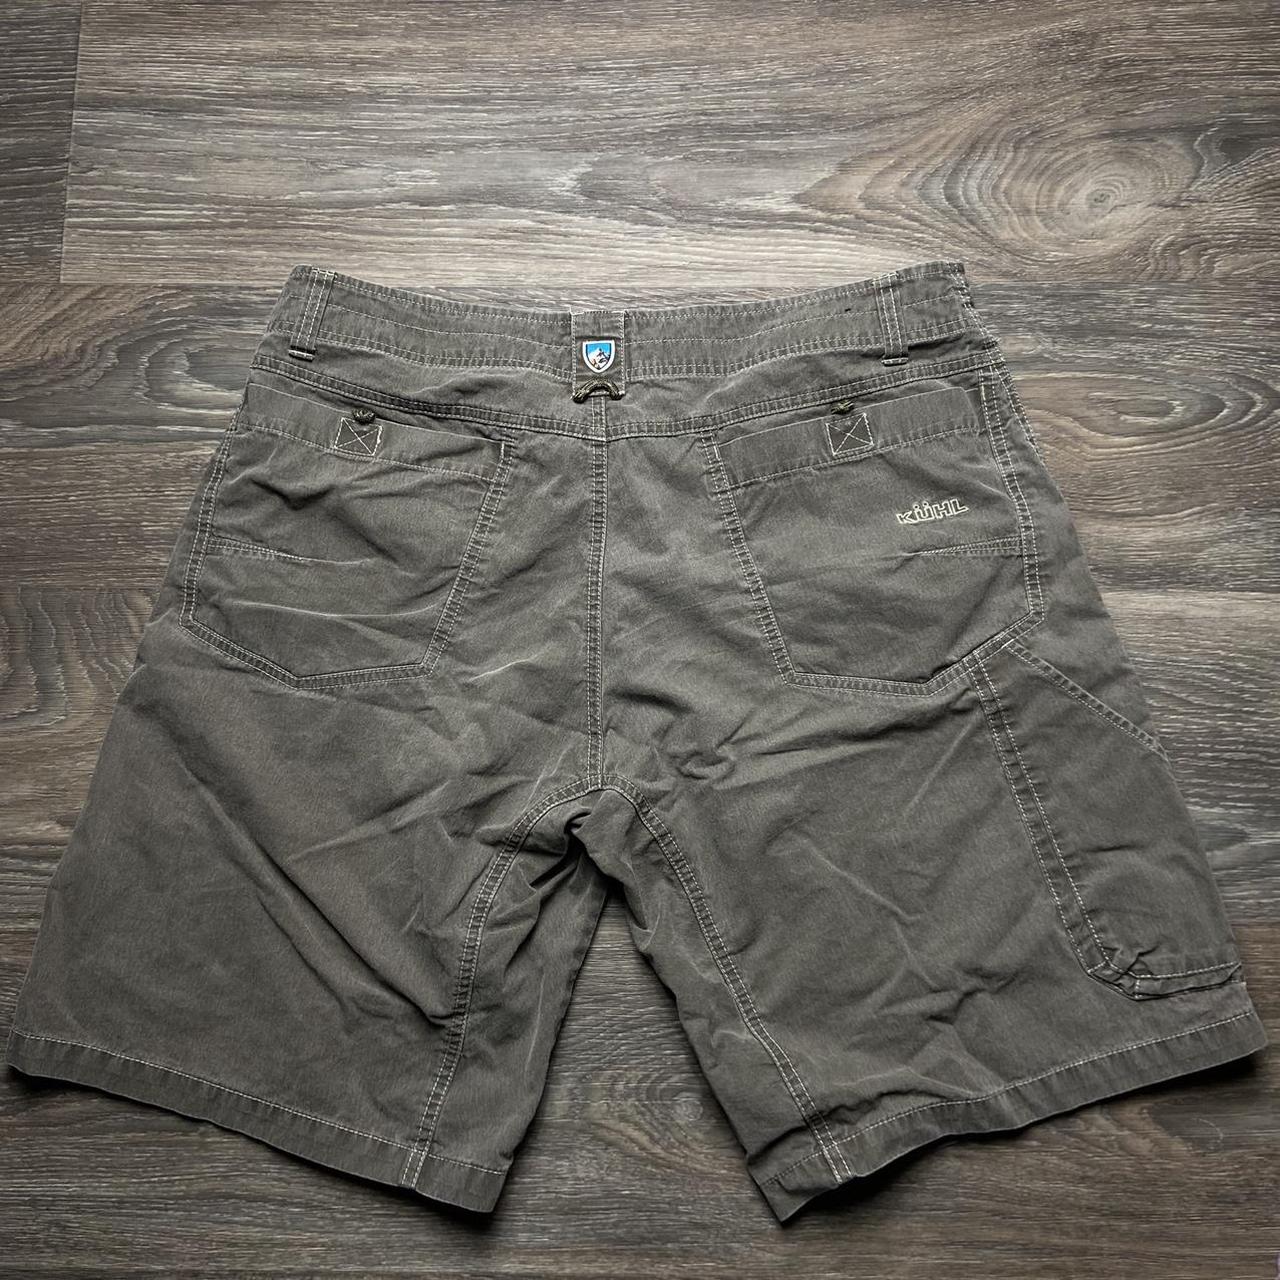 Product Image 4 - Kühl cargo shorts has 4